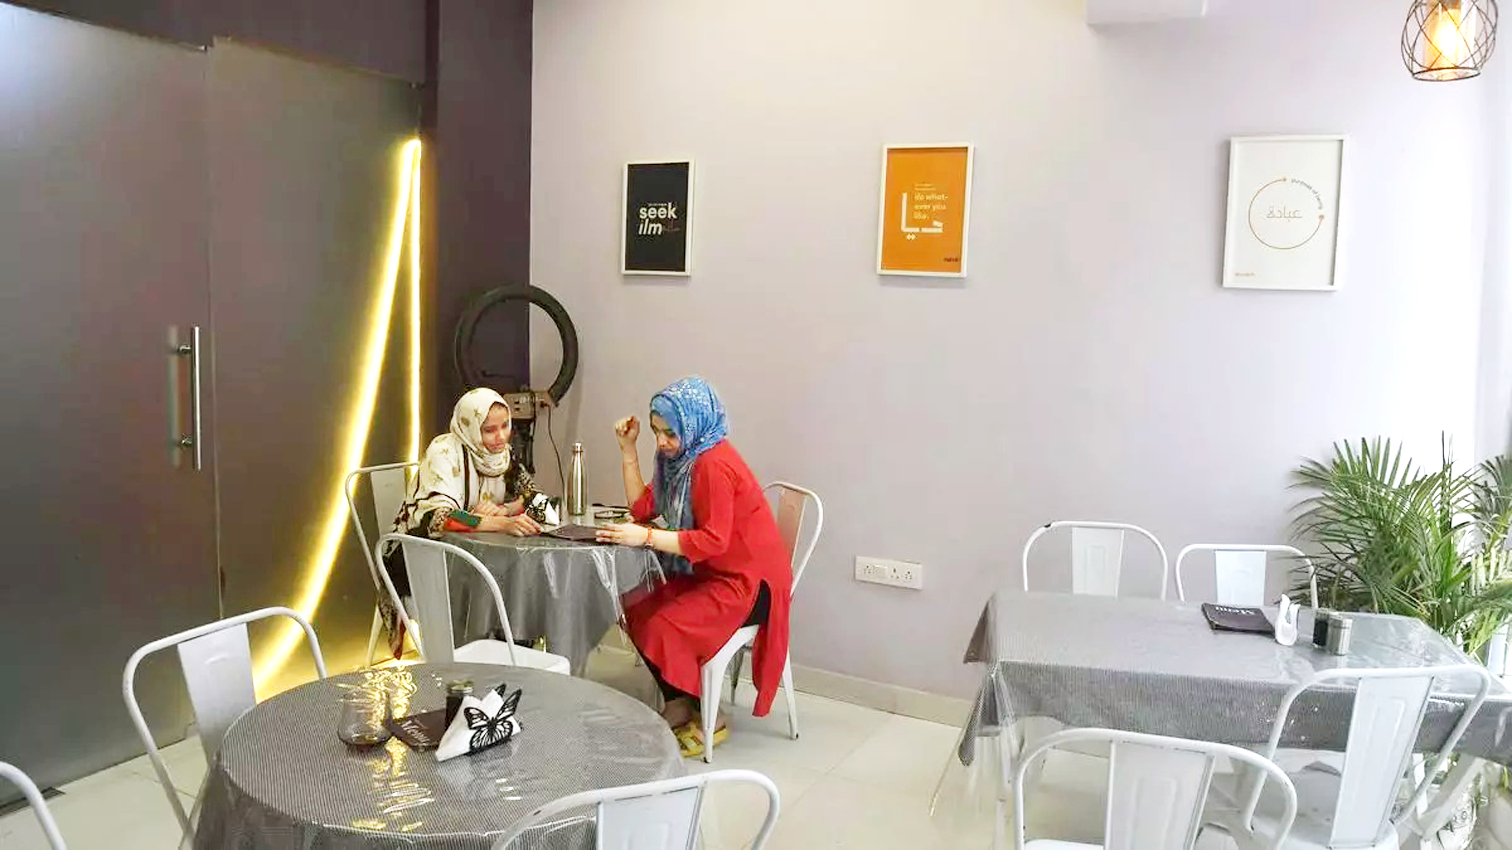 Bên trong Sheeru - quán cà phê chỉ dành cho phụ nữ - ở New Delhi - ẢNH: FRONTLINE/SUSHIL KUMAR VERMA